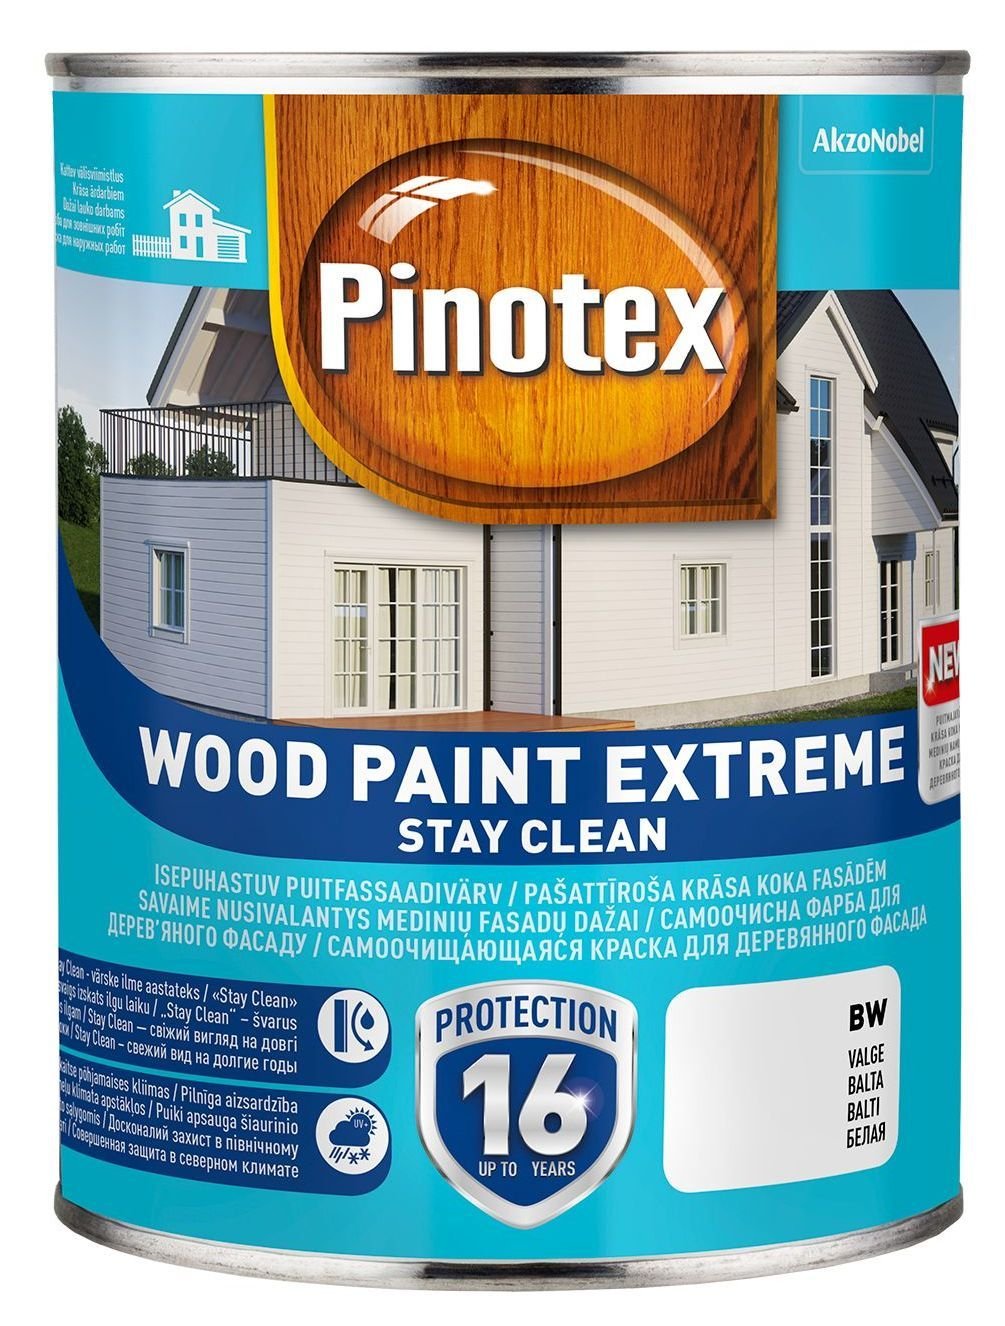 Medinių fasadų dažai PINOTEX WOOD PAINT EXTREME, BC bazė, 0,94 l